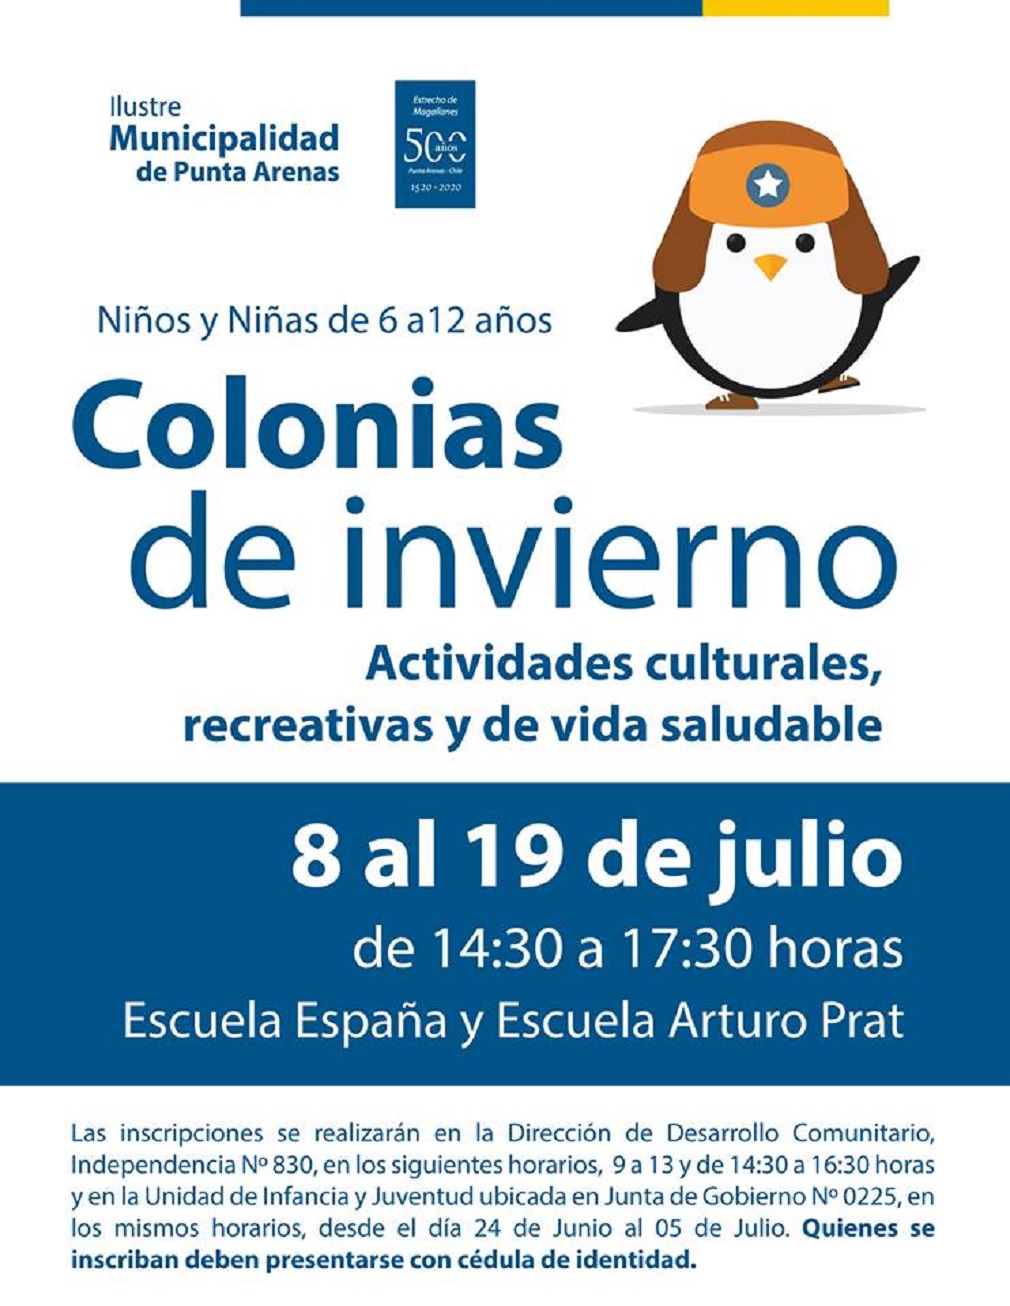 Colonias de Invierno se efectuarán en Punta Arenas entre el 8 al 19 de julio